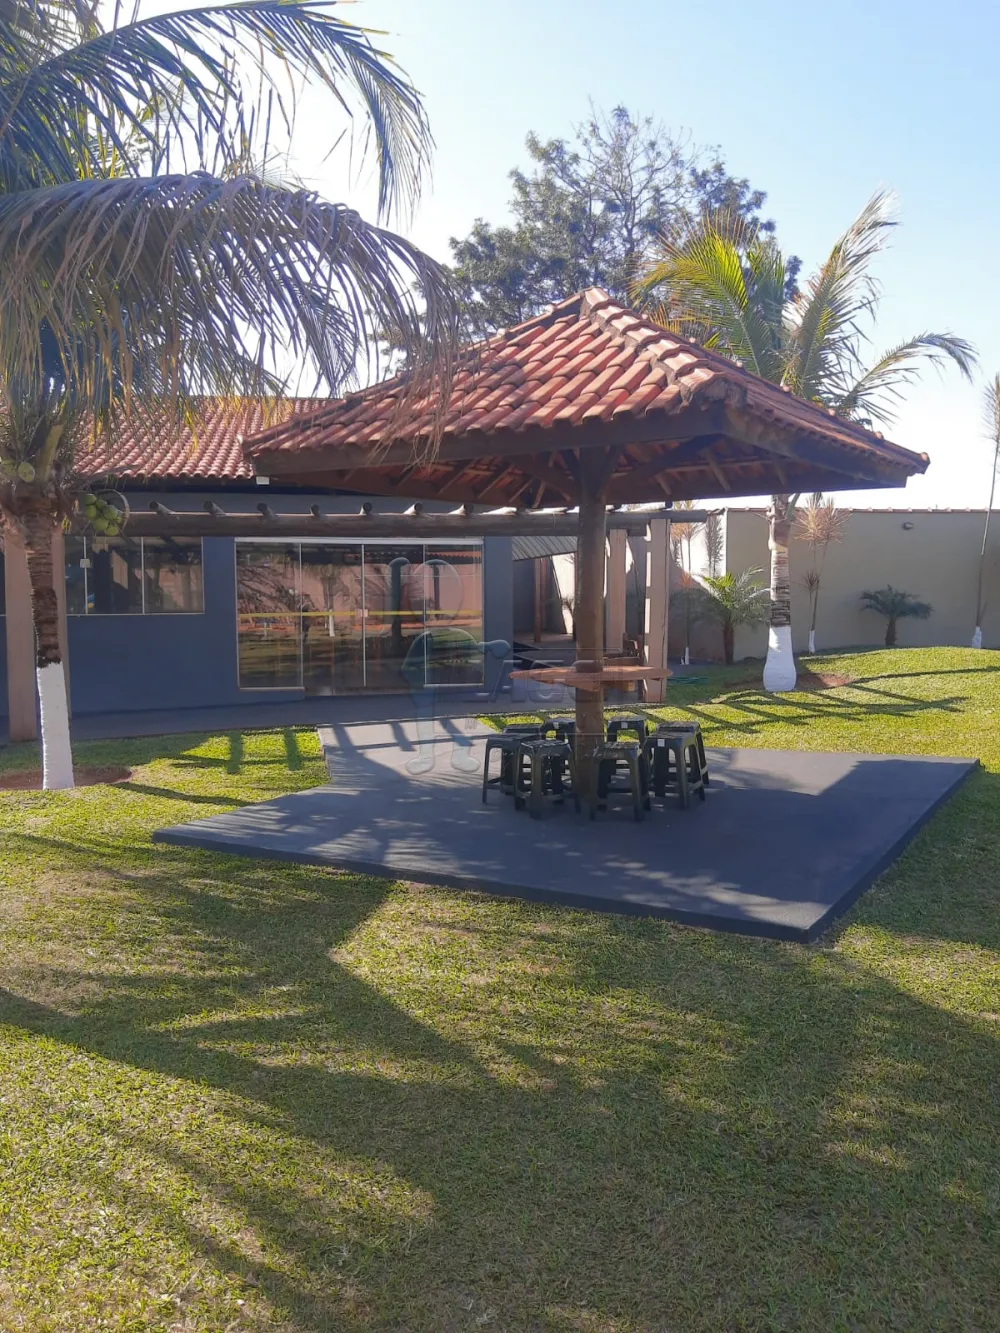 Comprar Casas / Chácara / Rancho em Sertãozinho R$ 1.370.000,00 - Foto 15